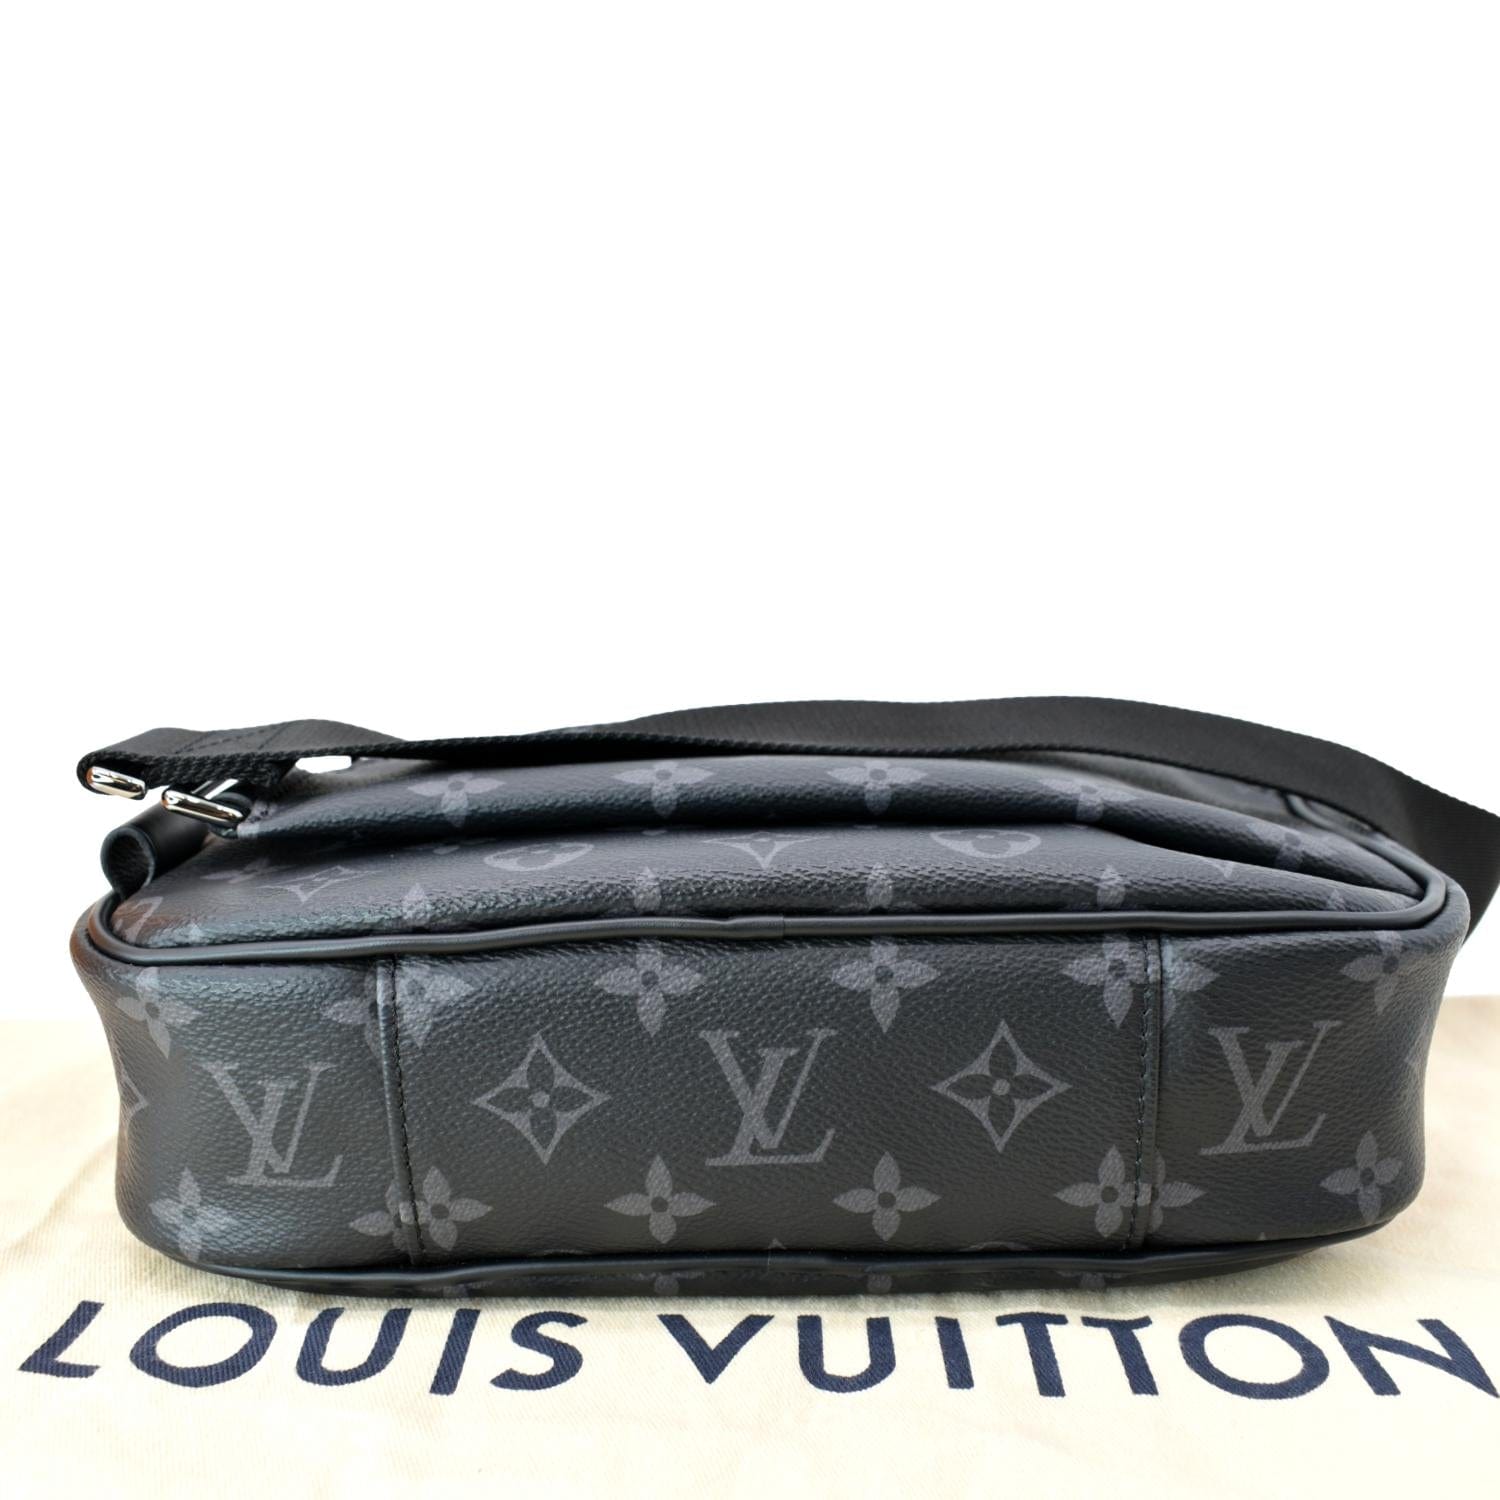 Louis Vuitton Bum/Belt Bag Black Interior Classic Monogram